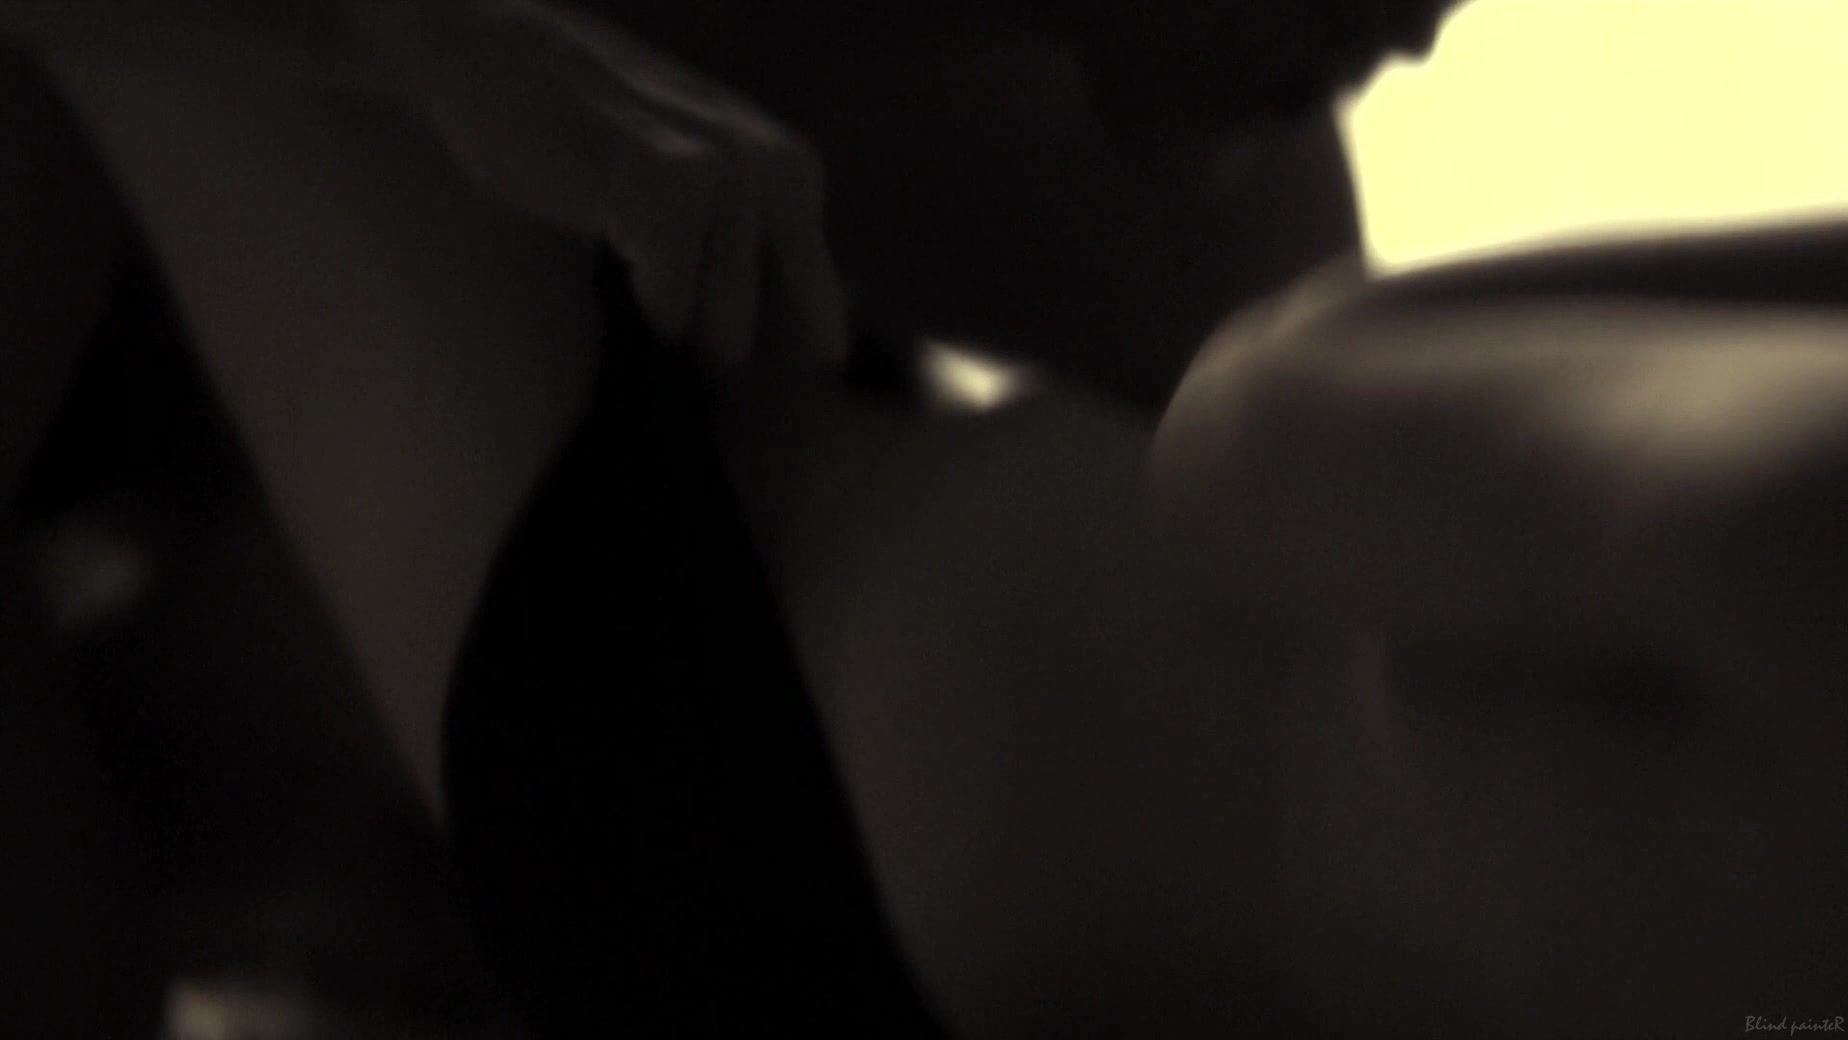 Putas Sex video Rachelle Lefevre nude scene - The Caller (2011) Handsome